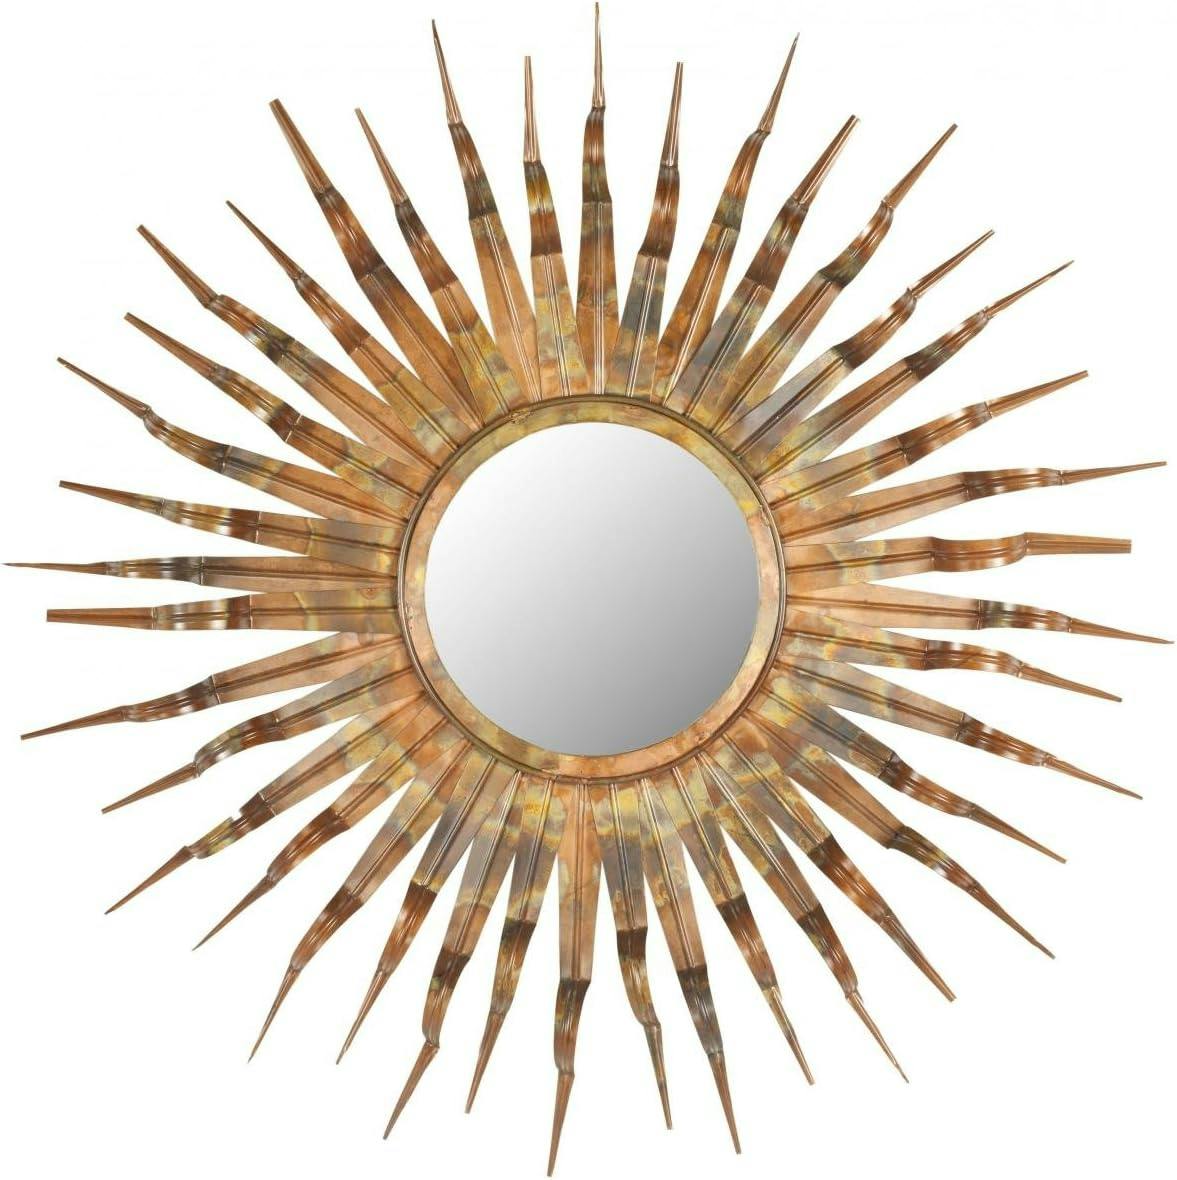 Espresso Bronze Sunburst Round Wall Mirror with Gold Accents, 36"